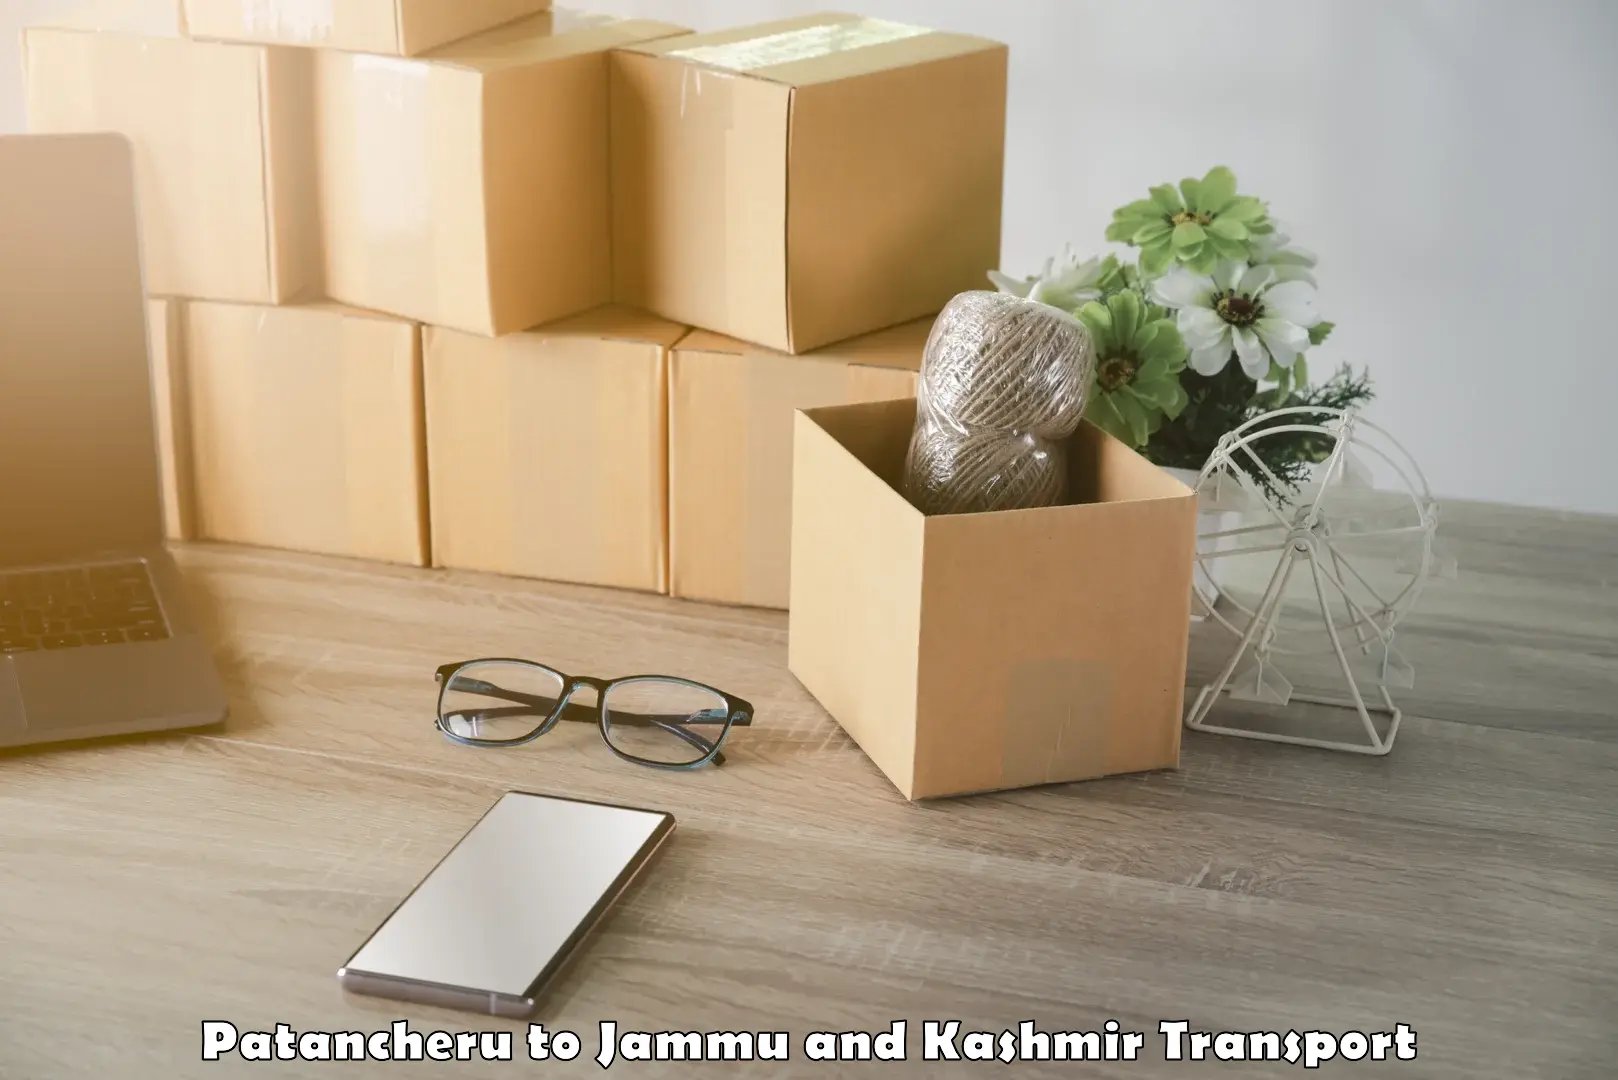 Interstate transport services Patancheru to Jammu